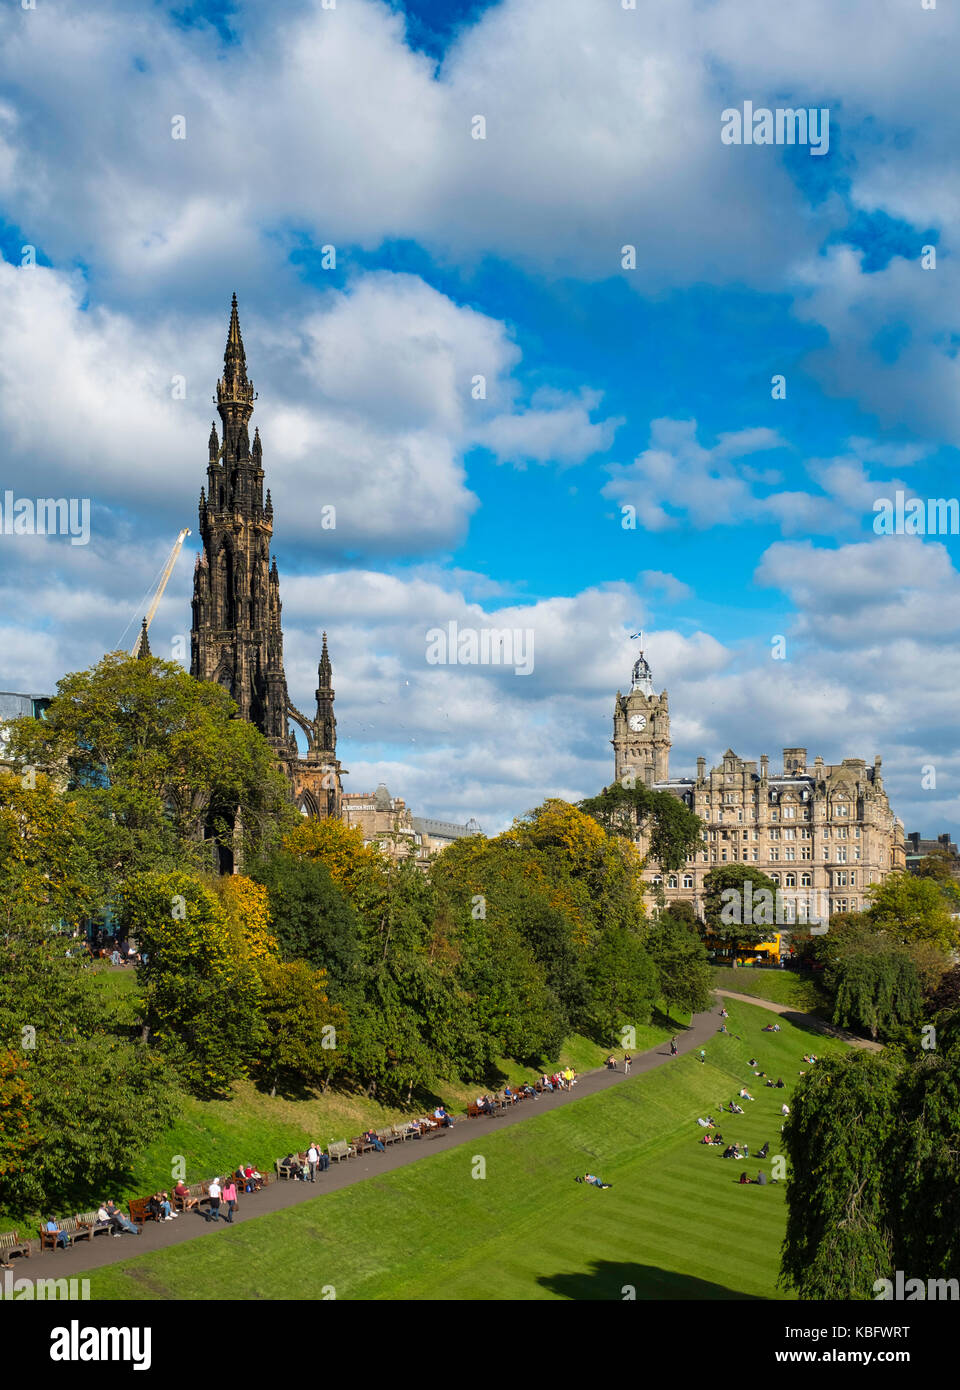 Blick über die Princess Street Gardens zu Scott Monument und das Balmoral Hotel in Edinburgh, Schottland, Vereinigtes Königreich. Stockfoto